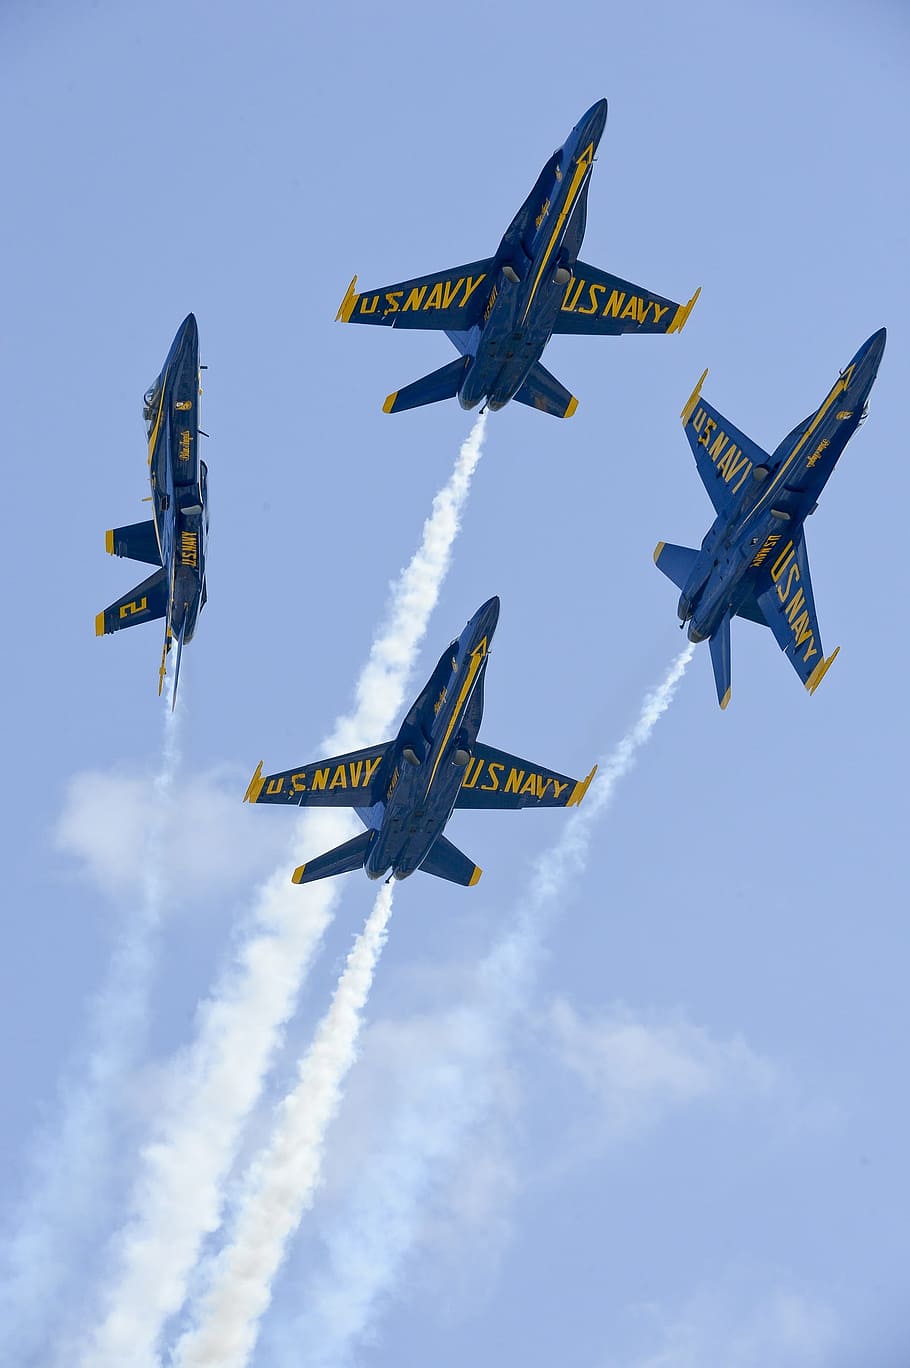 empat, biru, jet tempur, malaikat biru, angkatan laut, presisi, pesawat, pelatihan, serangan mendadak, manuver